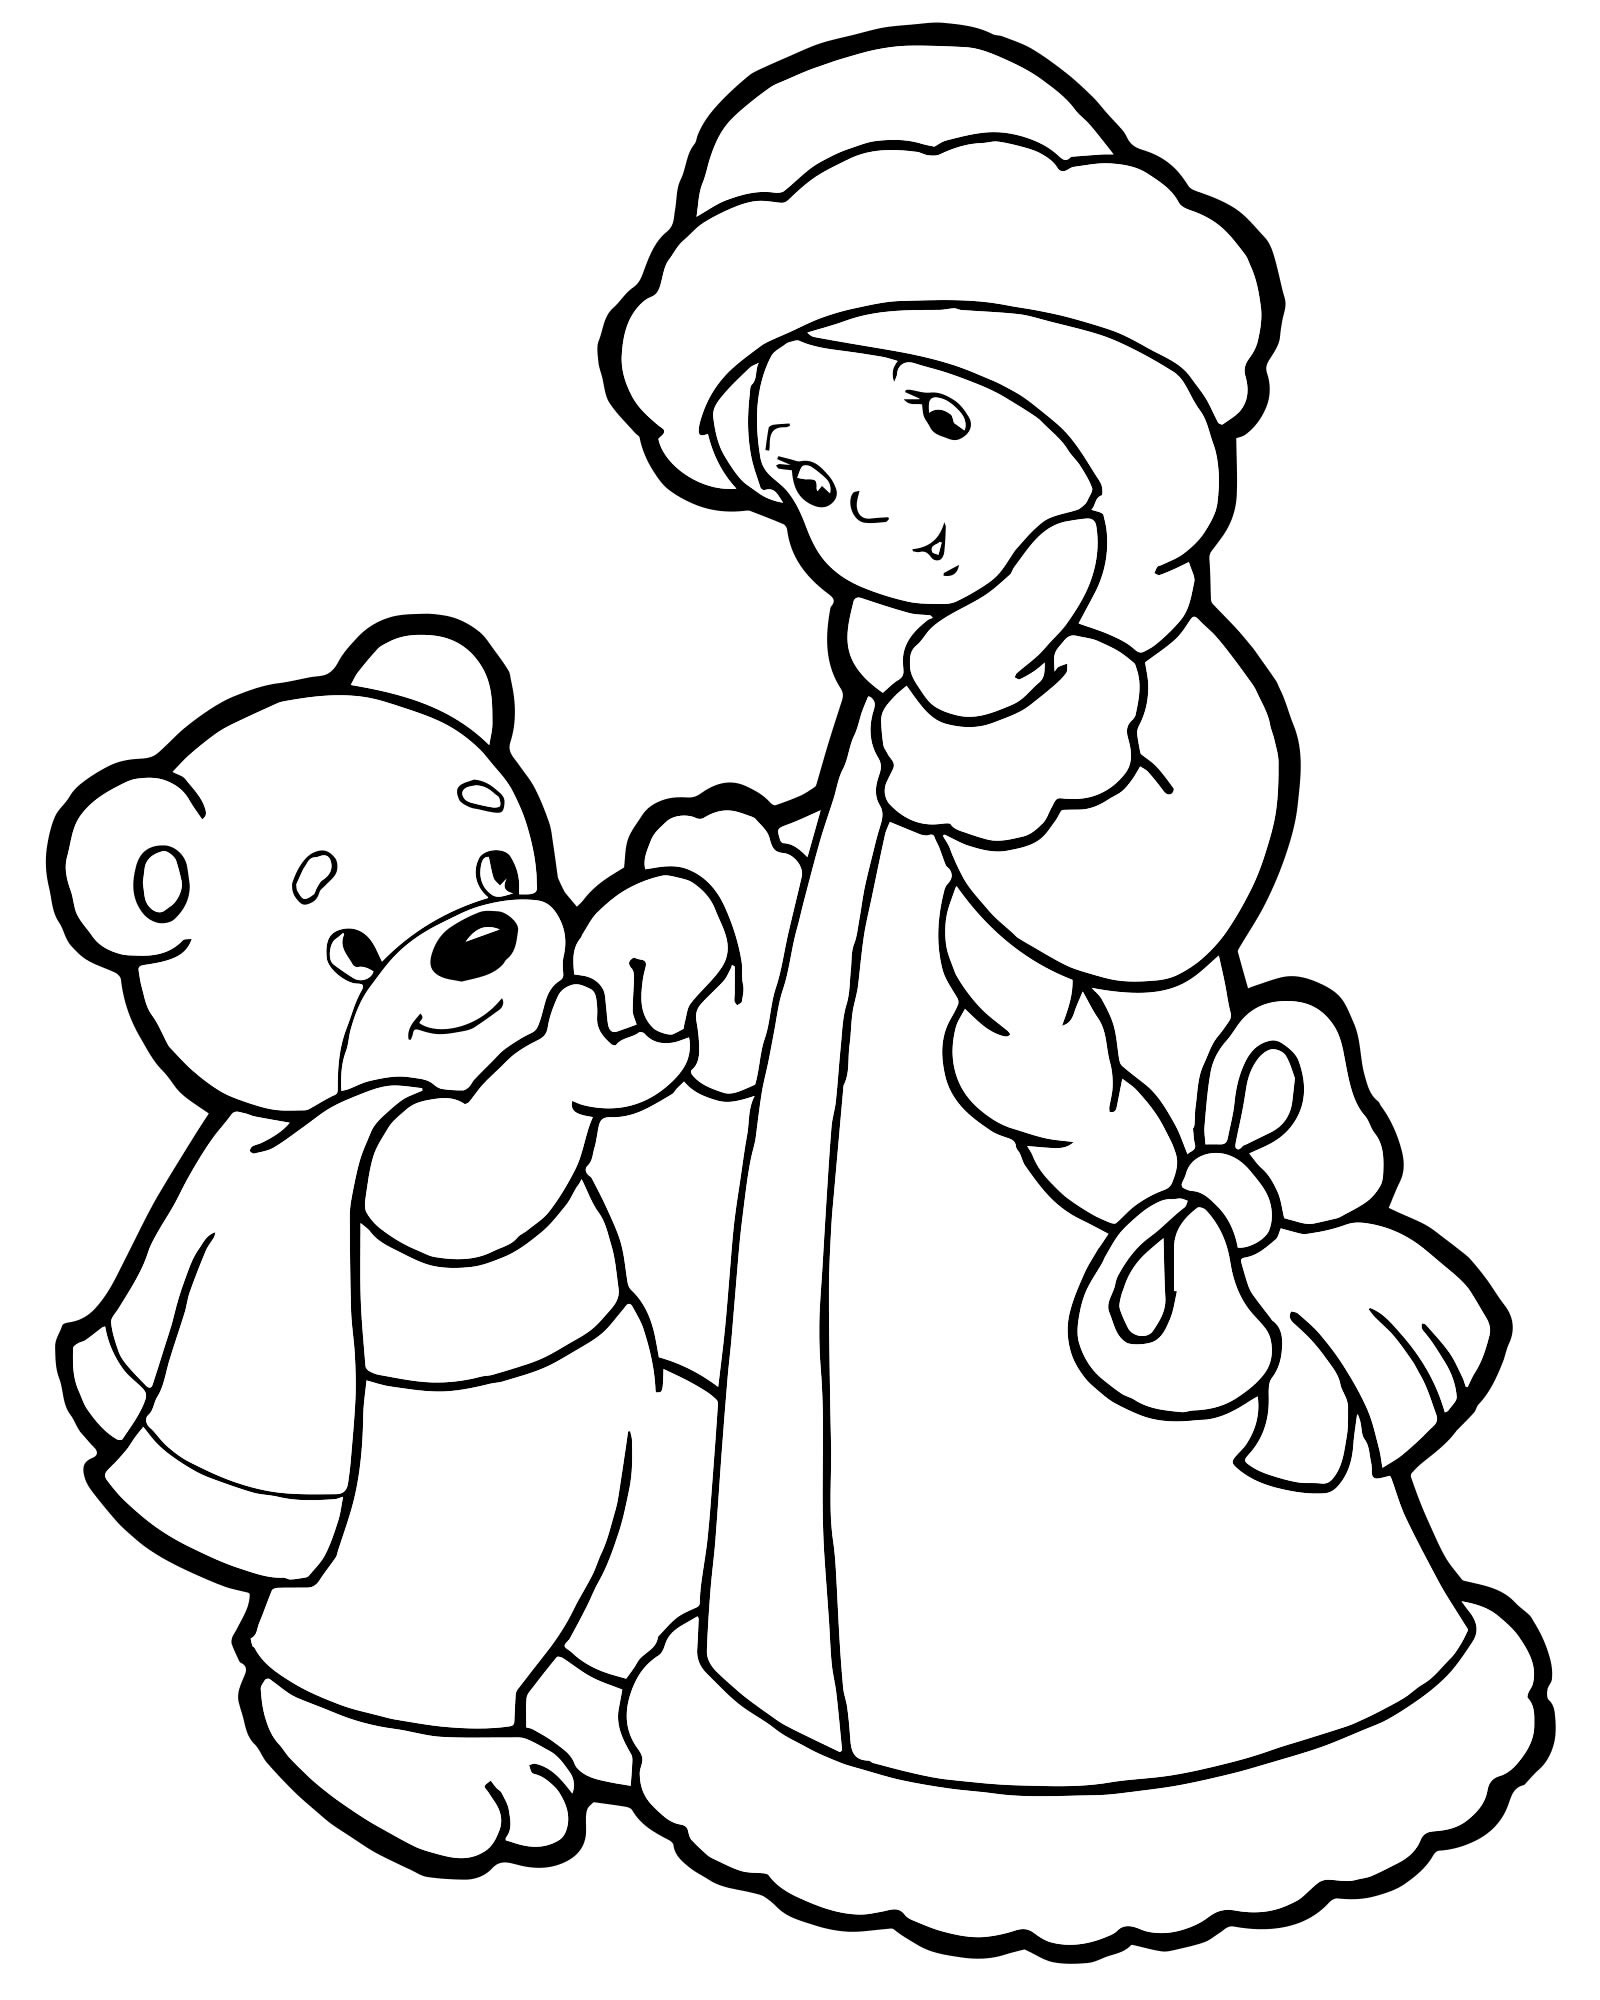 Снегурочка и мишка раскраска для детей